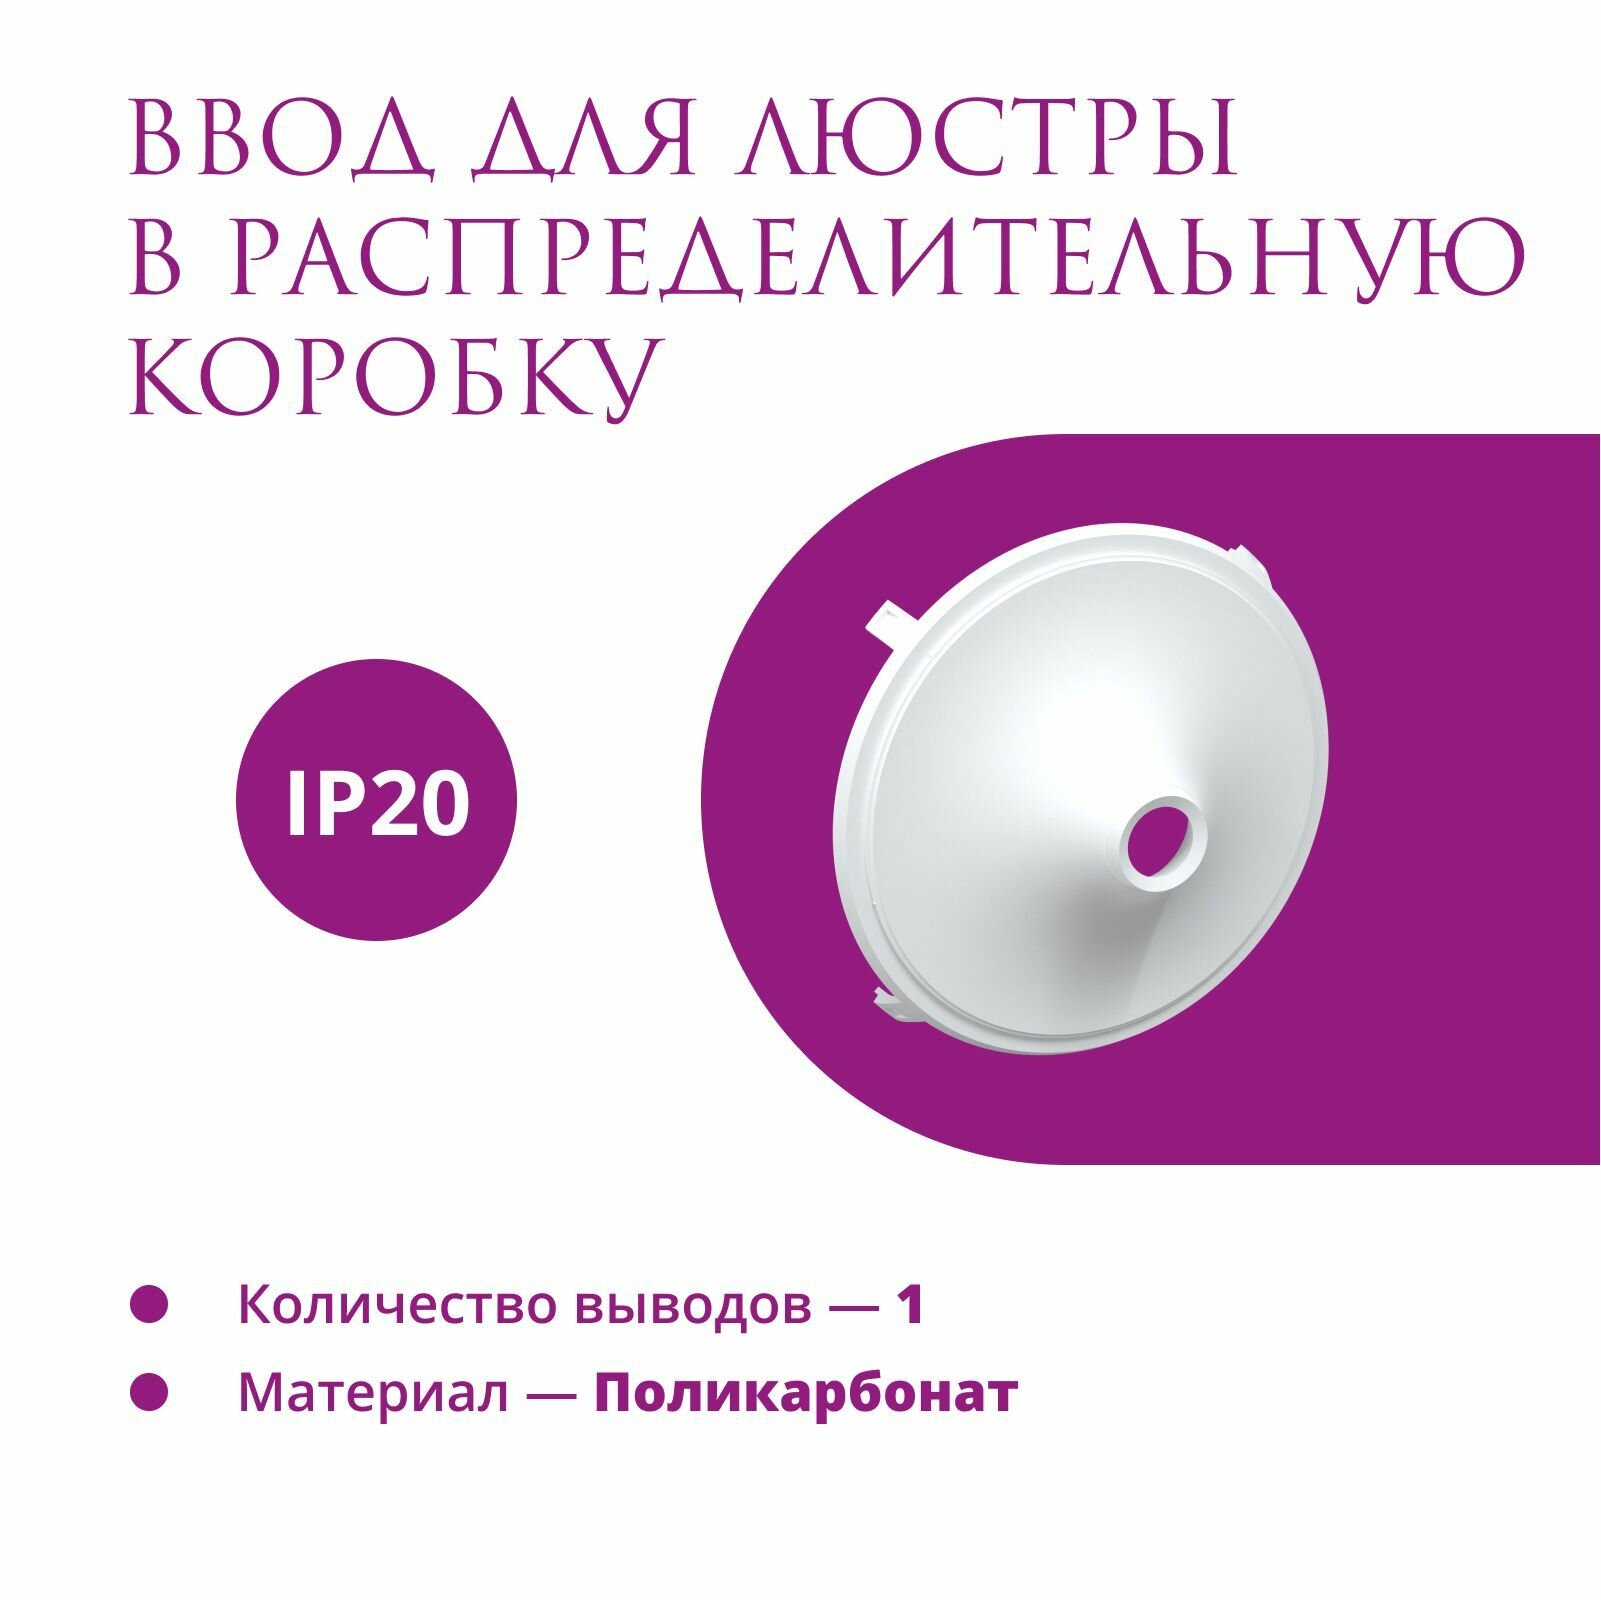 Ввод в распределительную коробку Rotondo (OneKeyElectro) для светильника, цвет белый.